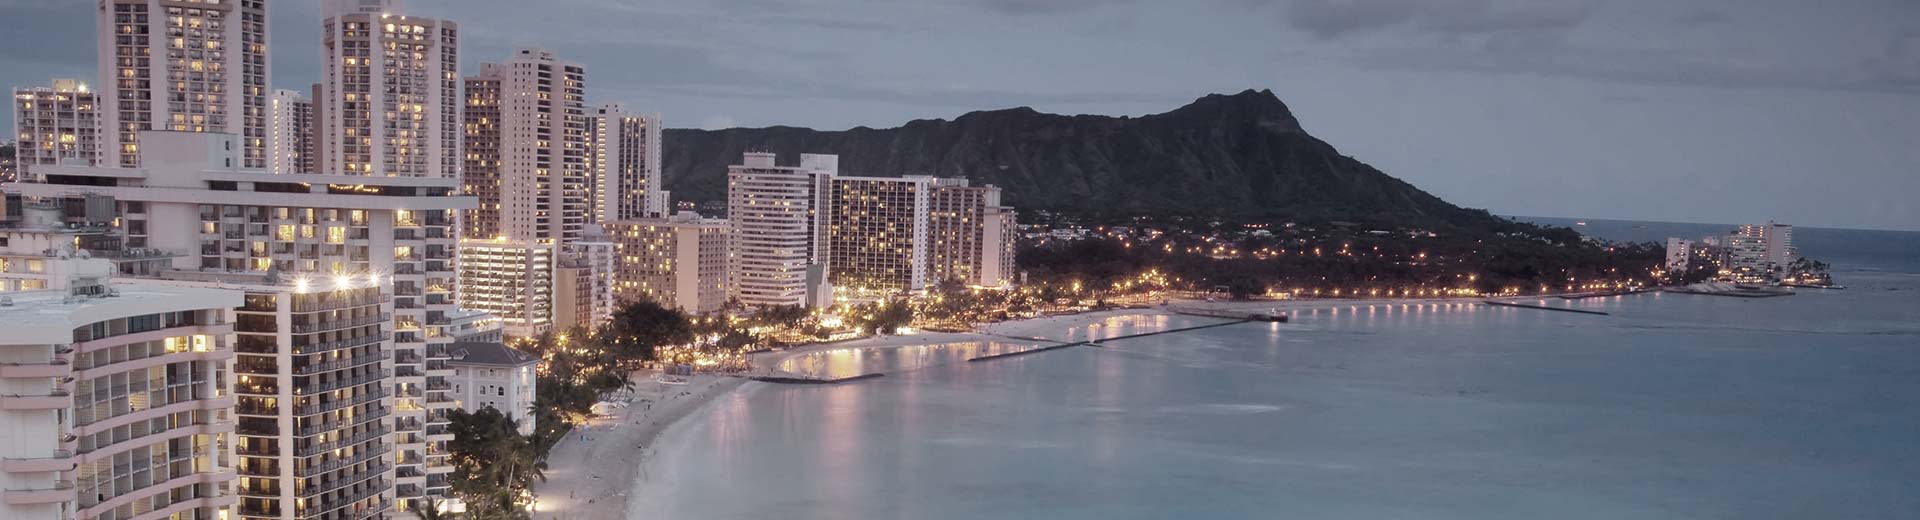 La hermosa costa de Honolulu con hoteles blancos altos en primer plano.